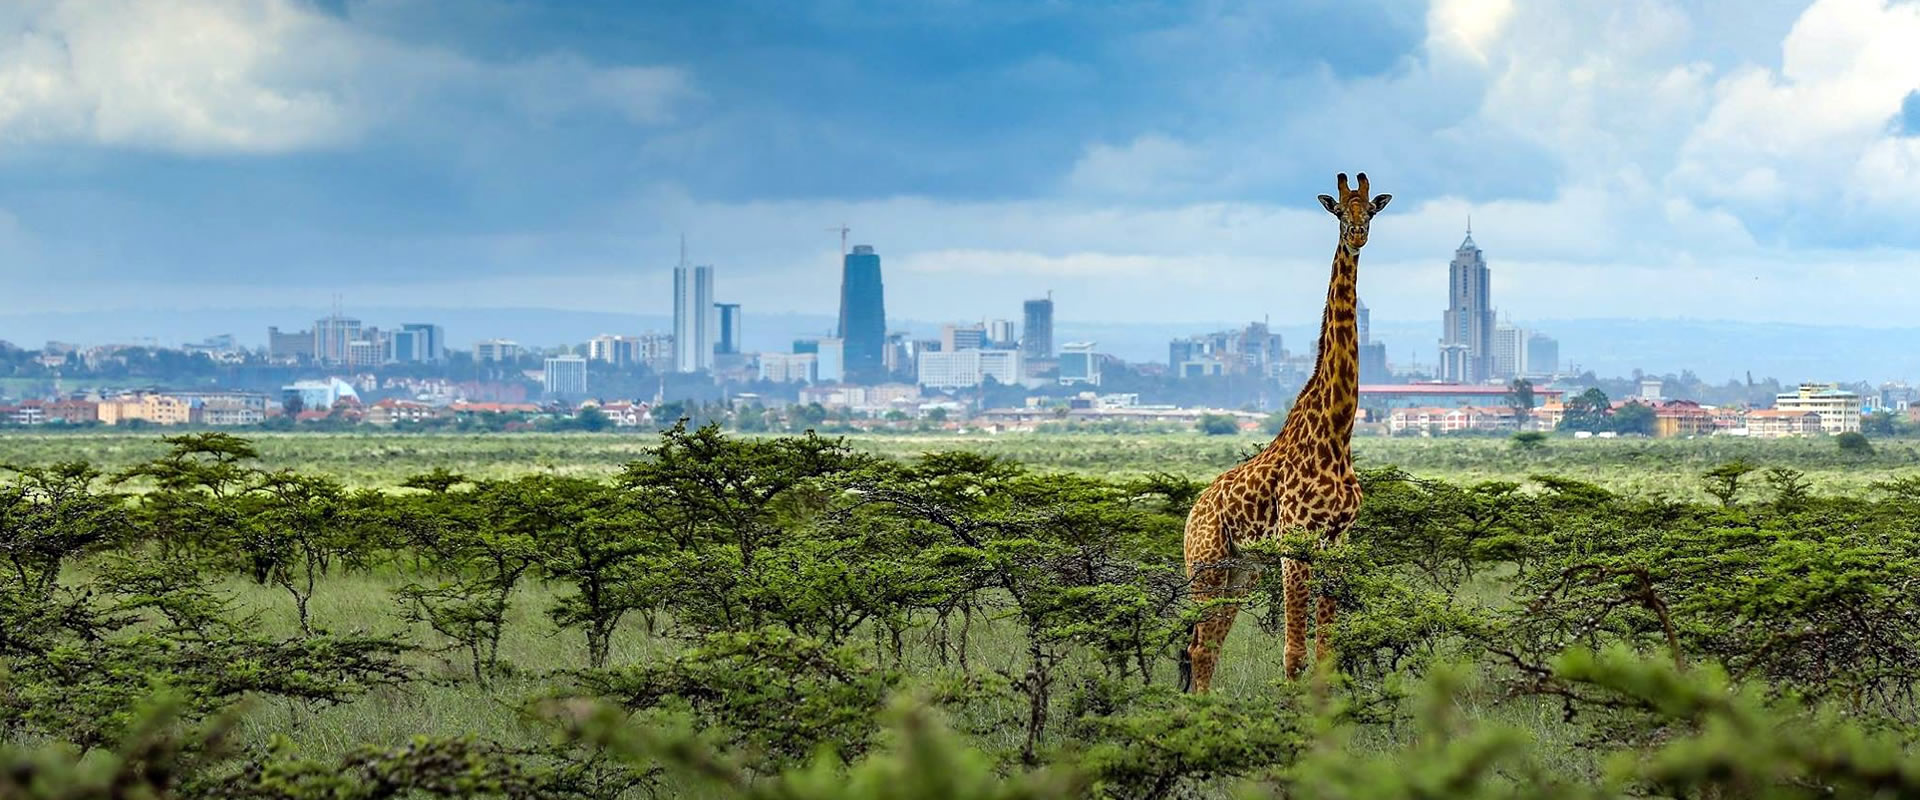 Африканская столица 7. Национальный парк Найроби. Национальный парк Найроби Кения. Небоскреб Жираф. Обои Найроби.